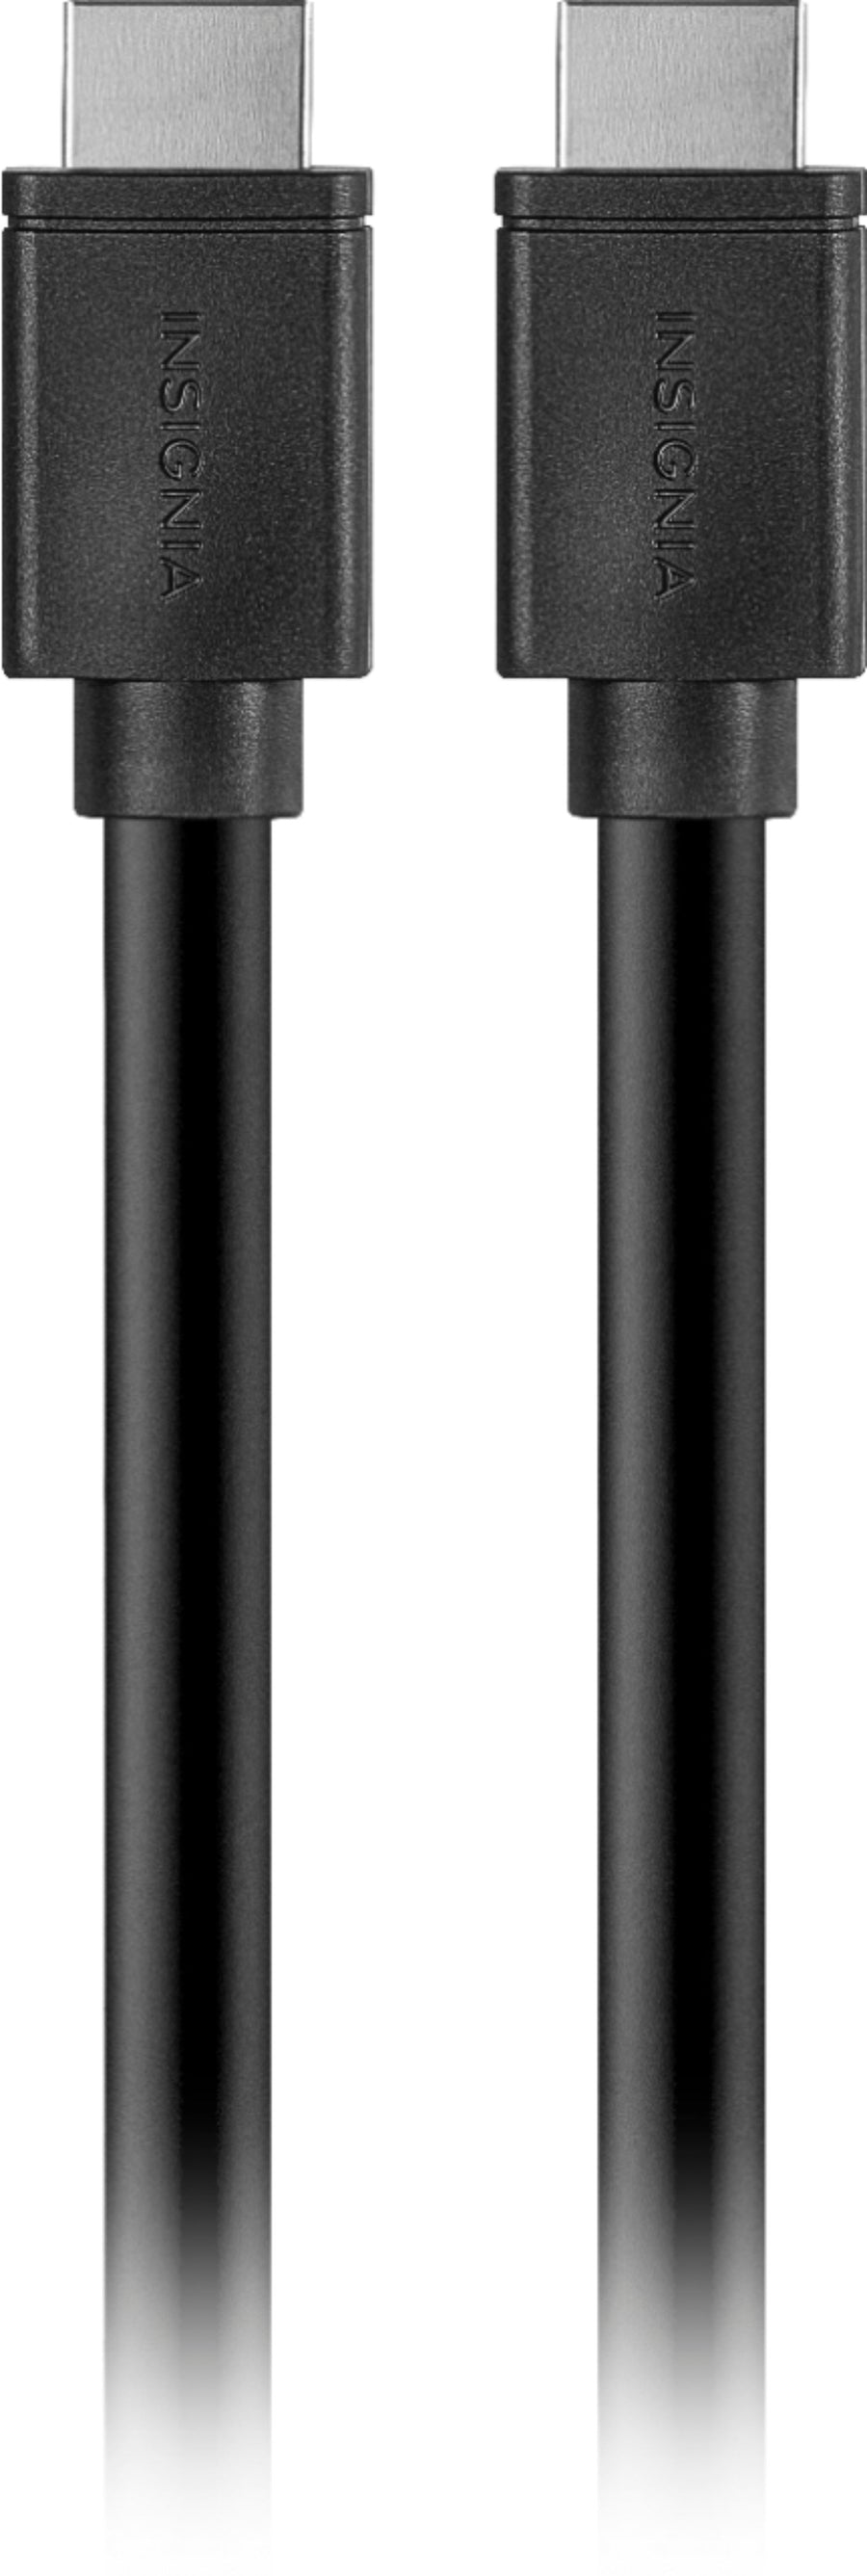 Insignia™ - 25' 4K Ultra HD HDMI Cable - Black_0